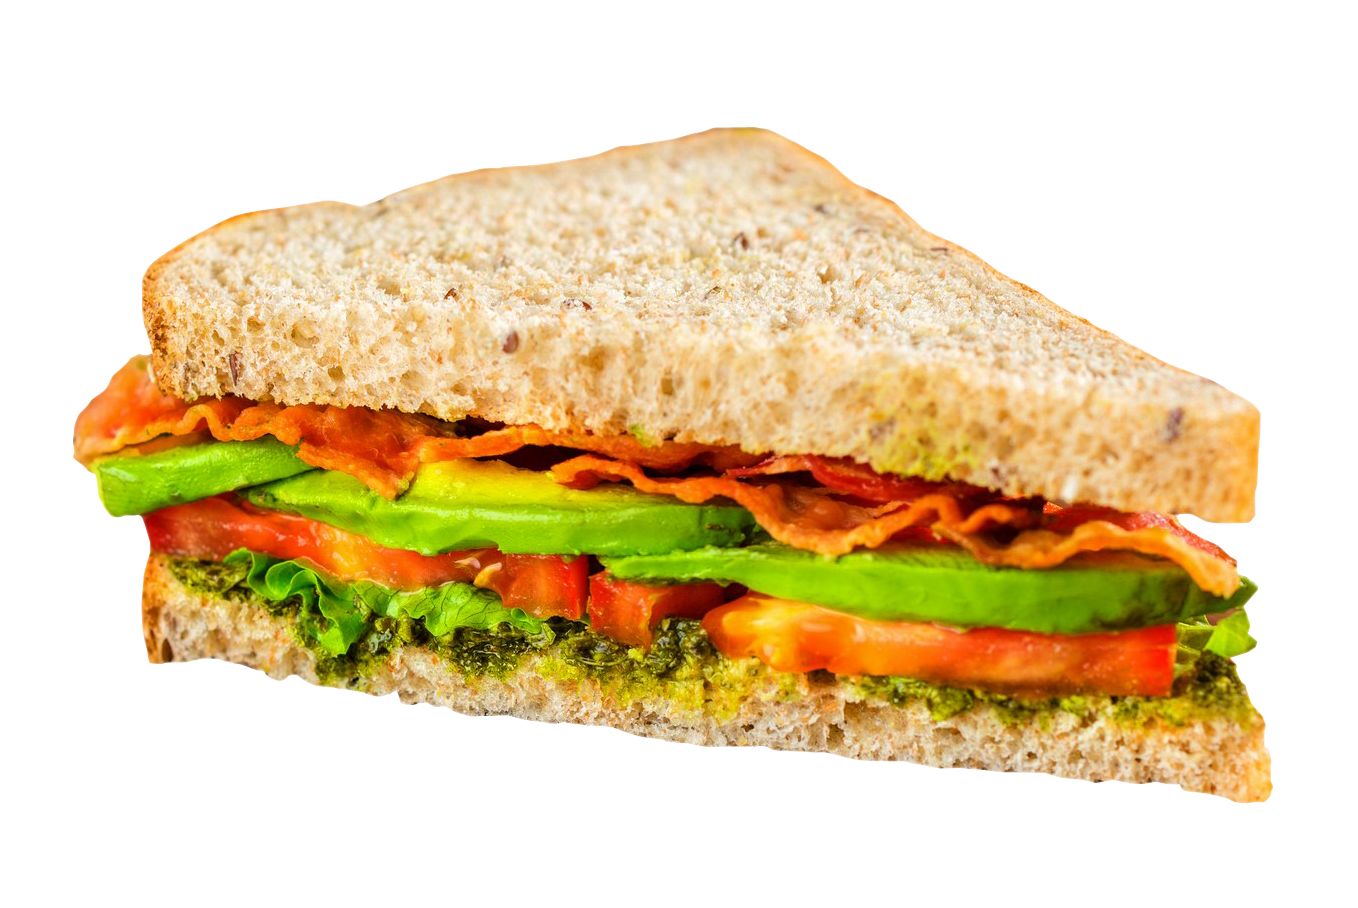 Sandwich Transparent Image